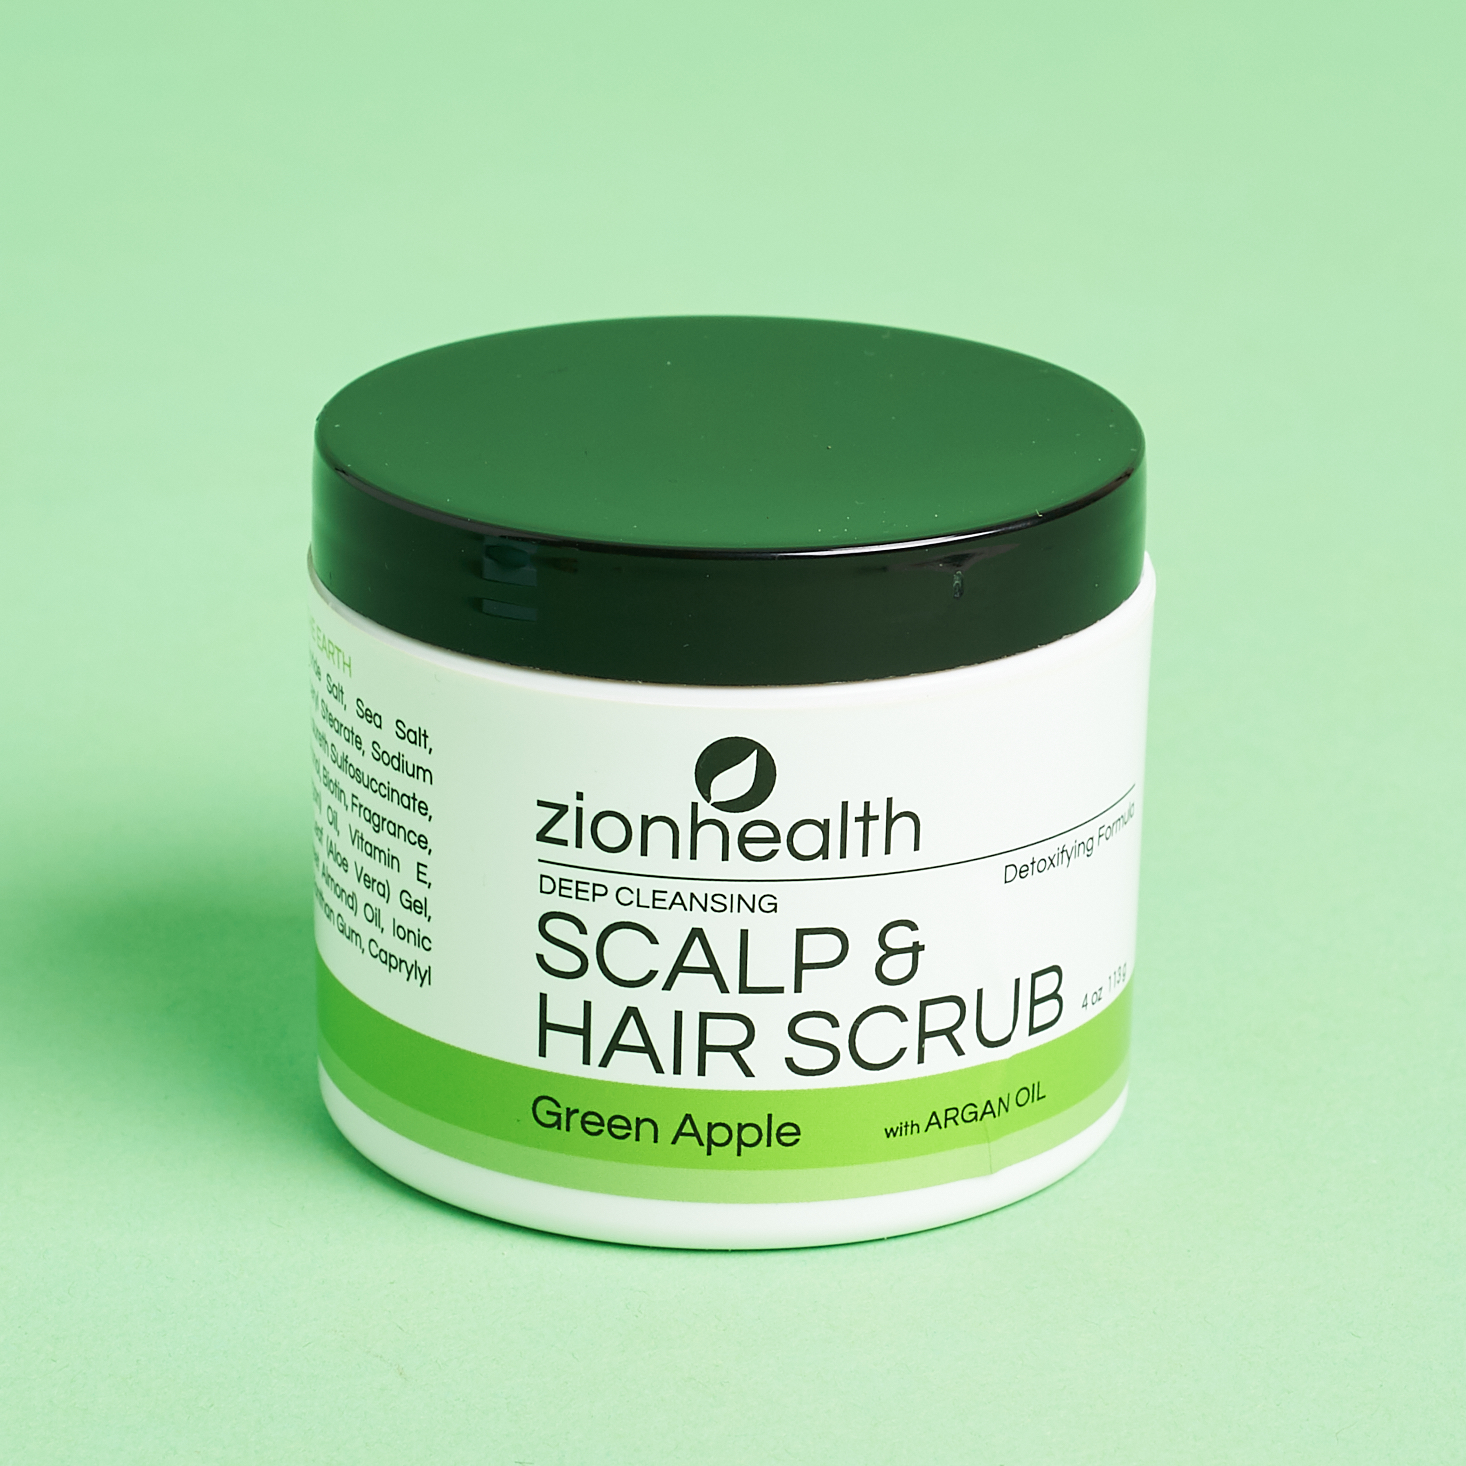 Zionhealth Deep Cleansing Scalp & Hair Scrub